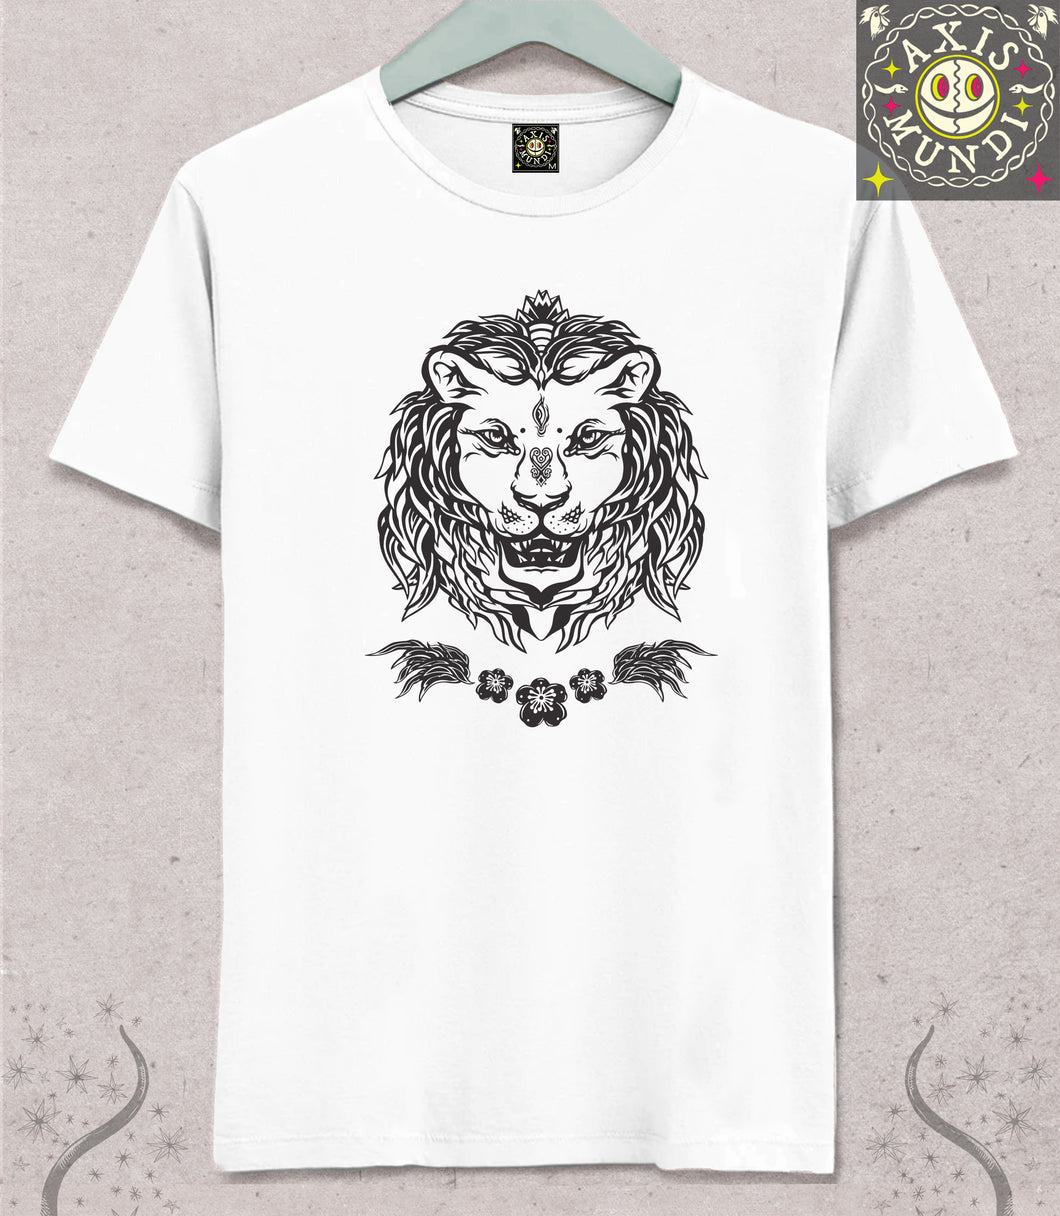 Awakening Lion T-shirt